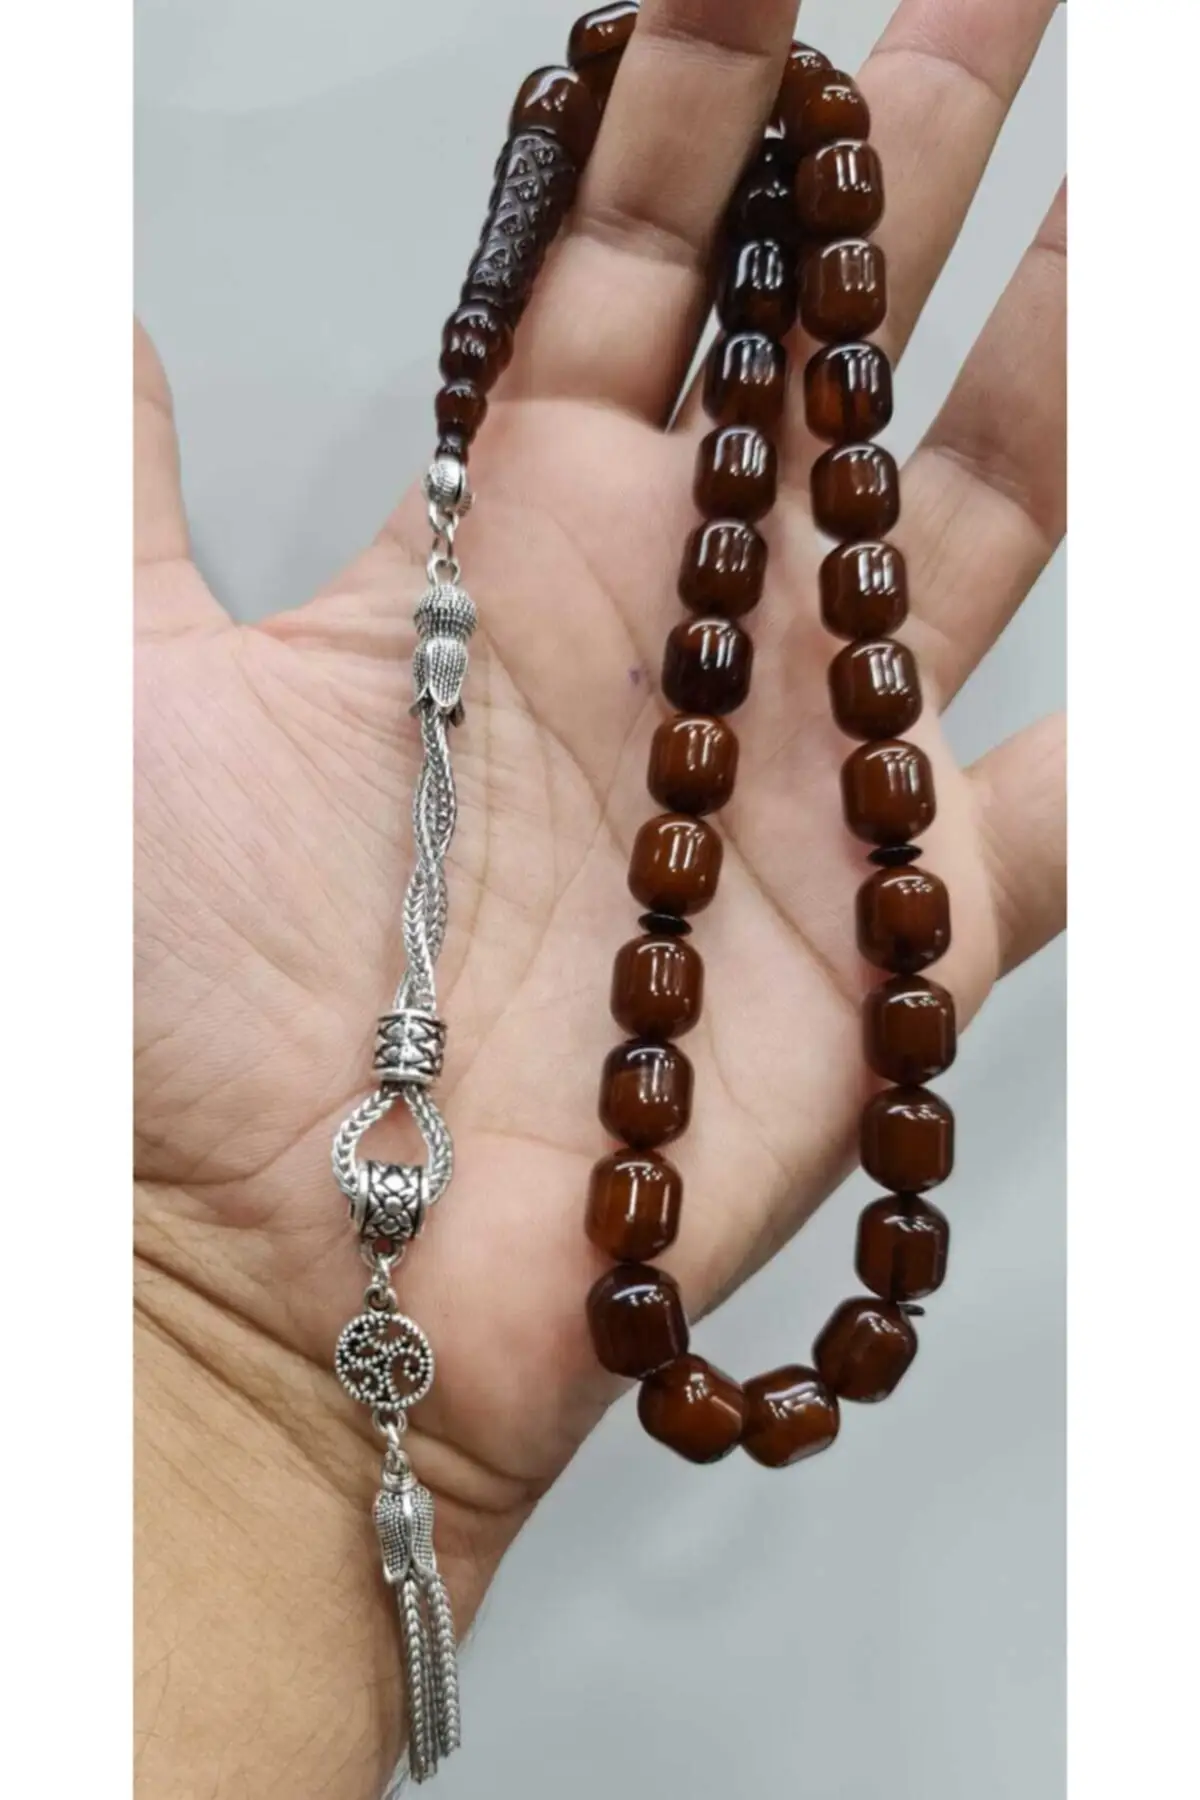 

Islamic Tasbih Muslim Rosary Beads 33 Prayer Rosary For Men Bracelet For Men Accessory amber oltu amber stone Handmade Turkey